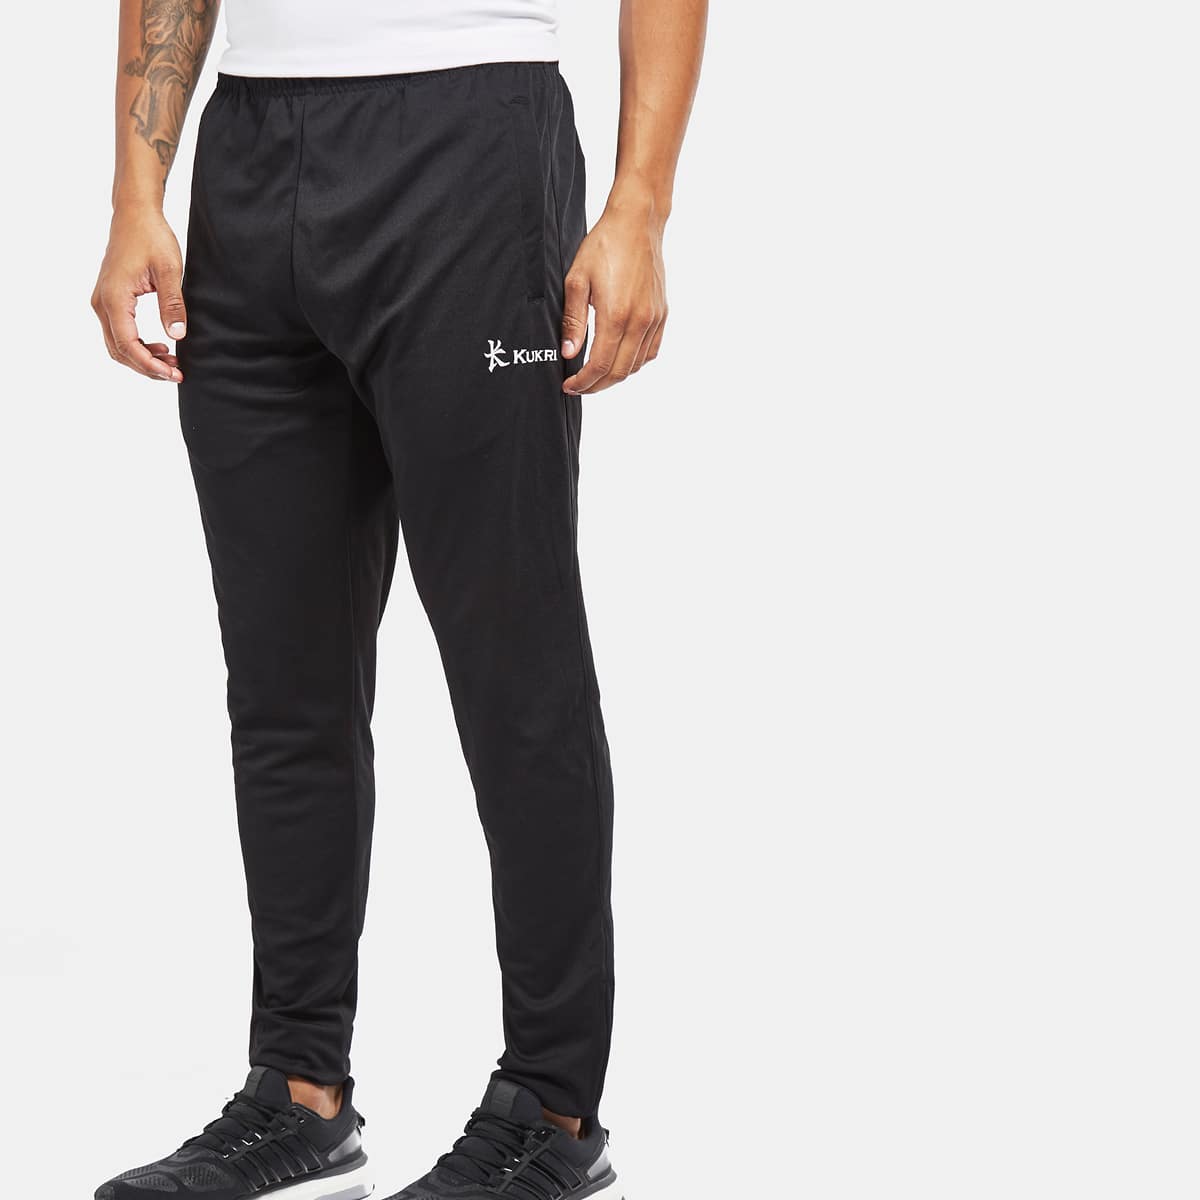 Kukri black Retro tapered track pants – Uniform Store NI